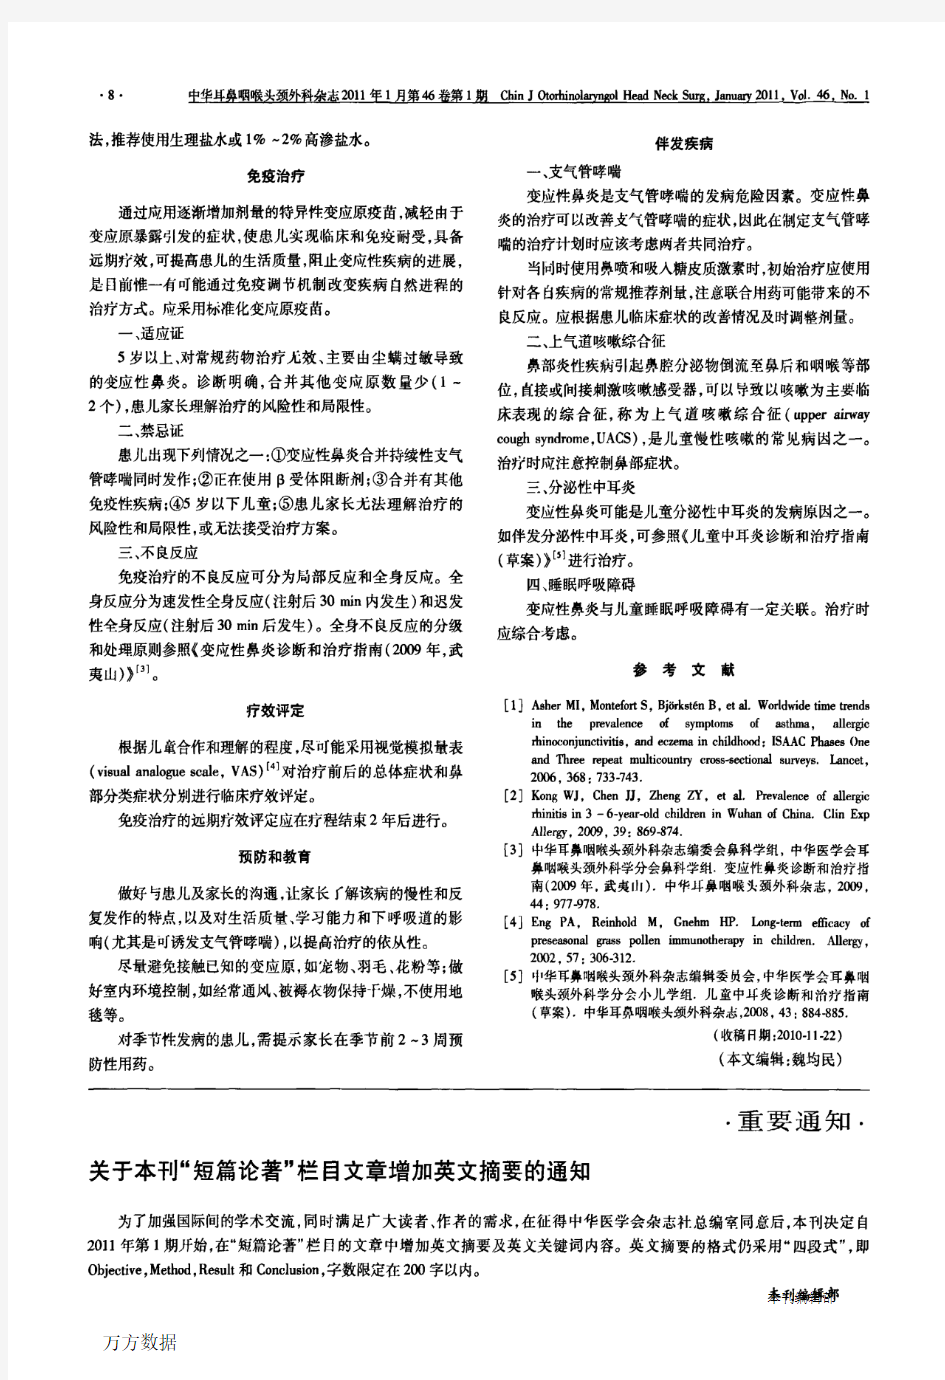 儿童变应性鼻炎诊断和治疗指南(2010年,重庆)